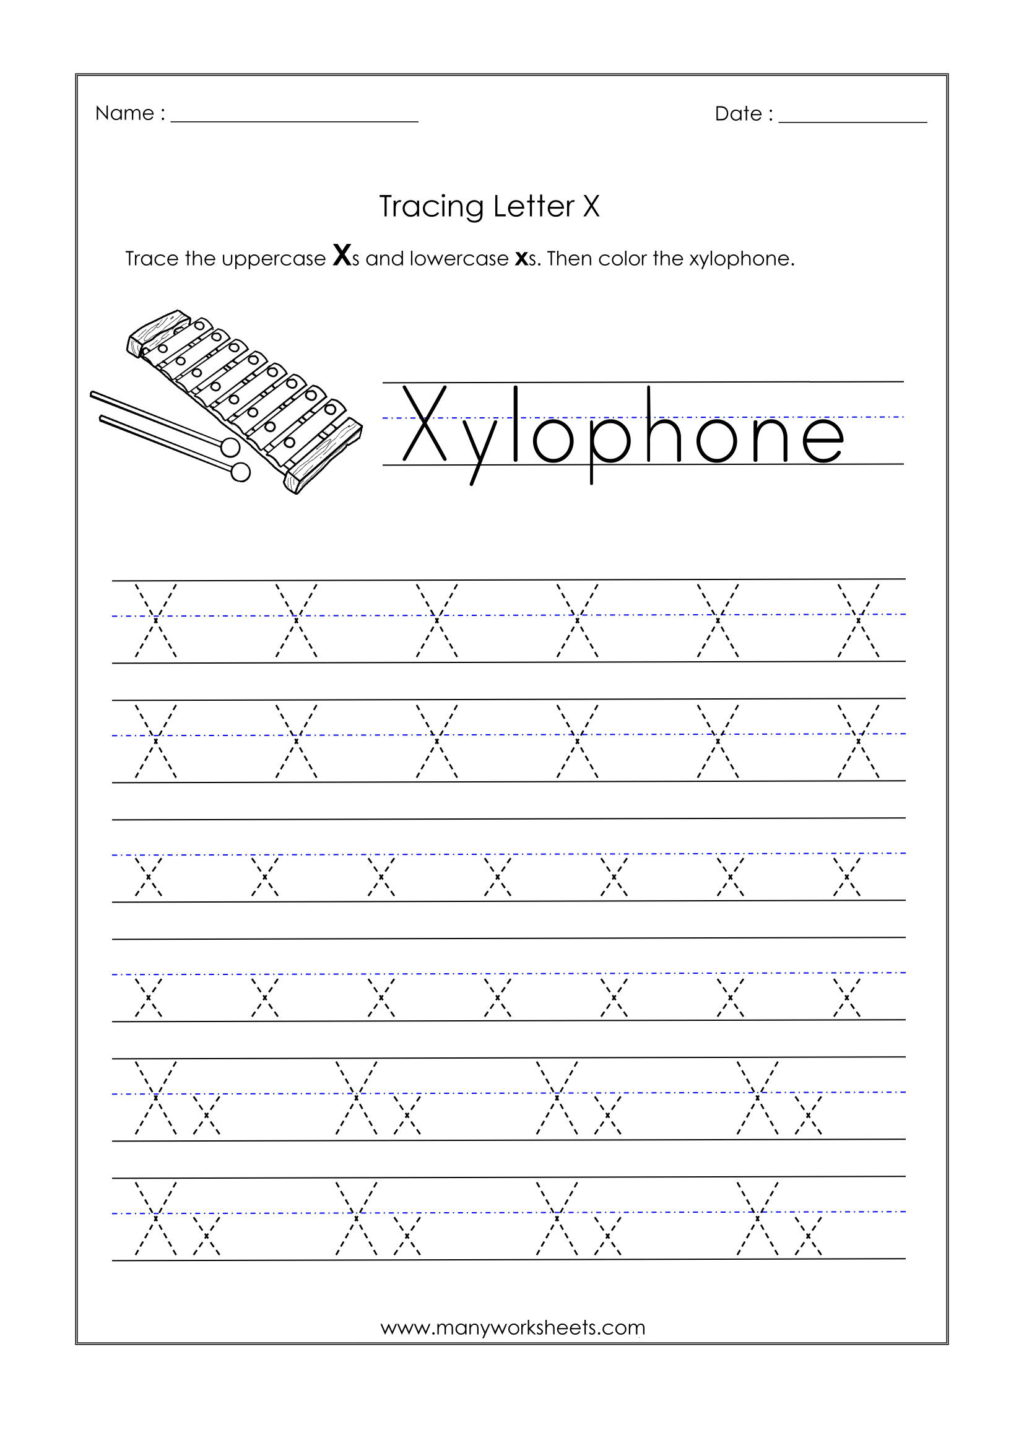 Worksheet ~ Alphabetiting Sheets Letter X Tracing Worksheet inside Tracing Letter X Preschool